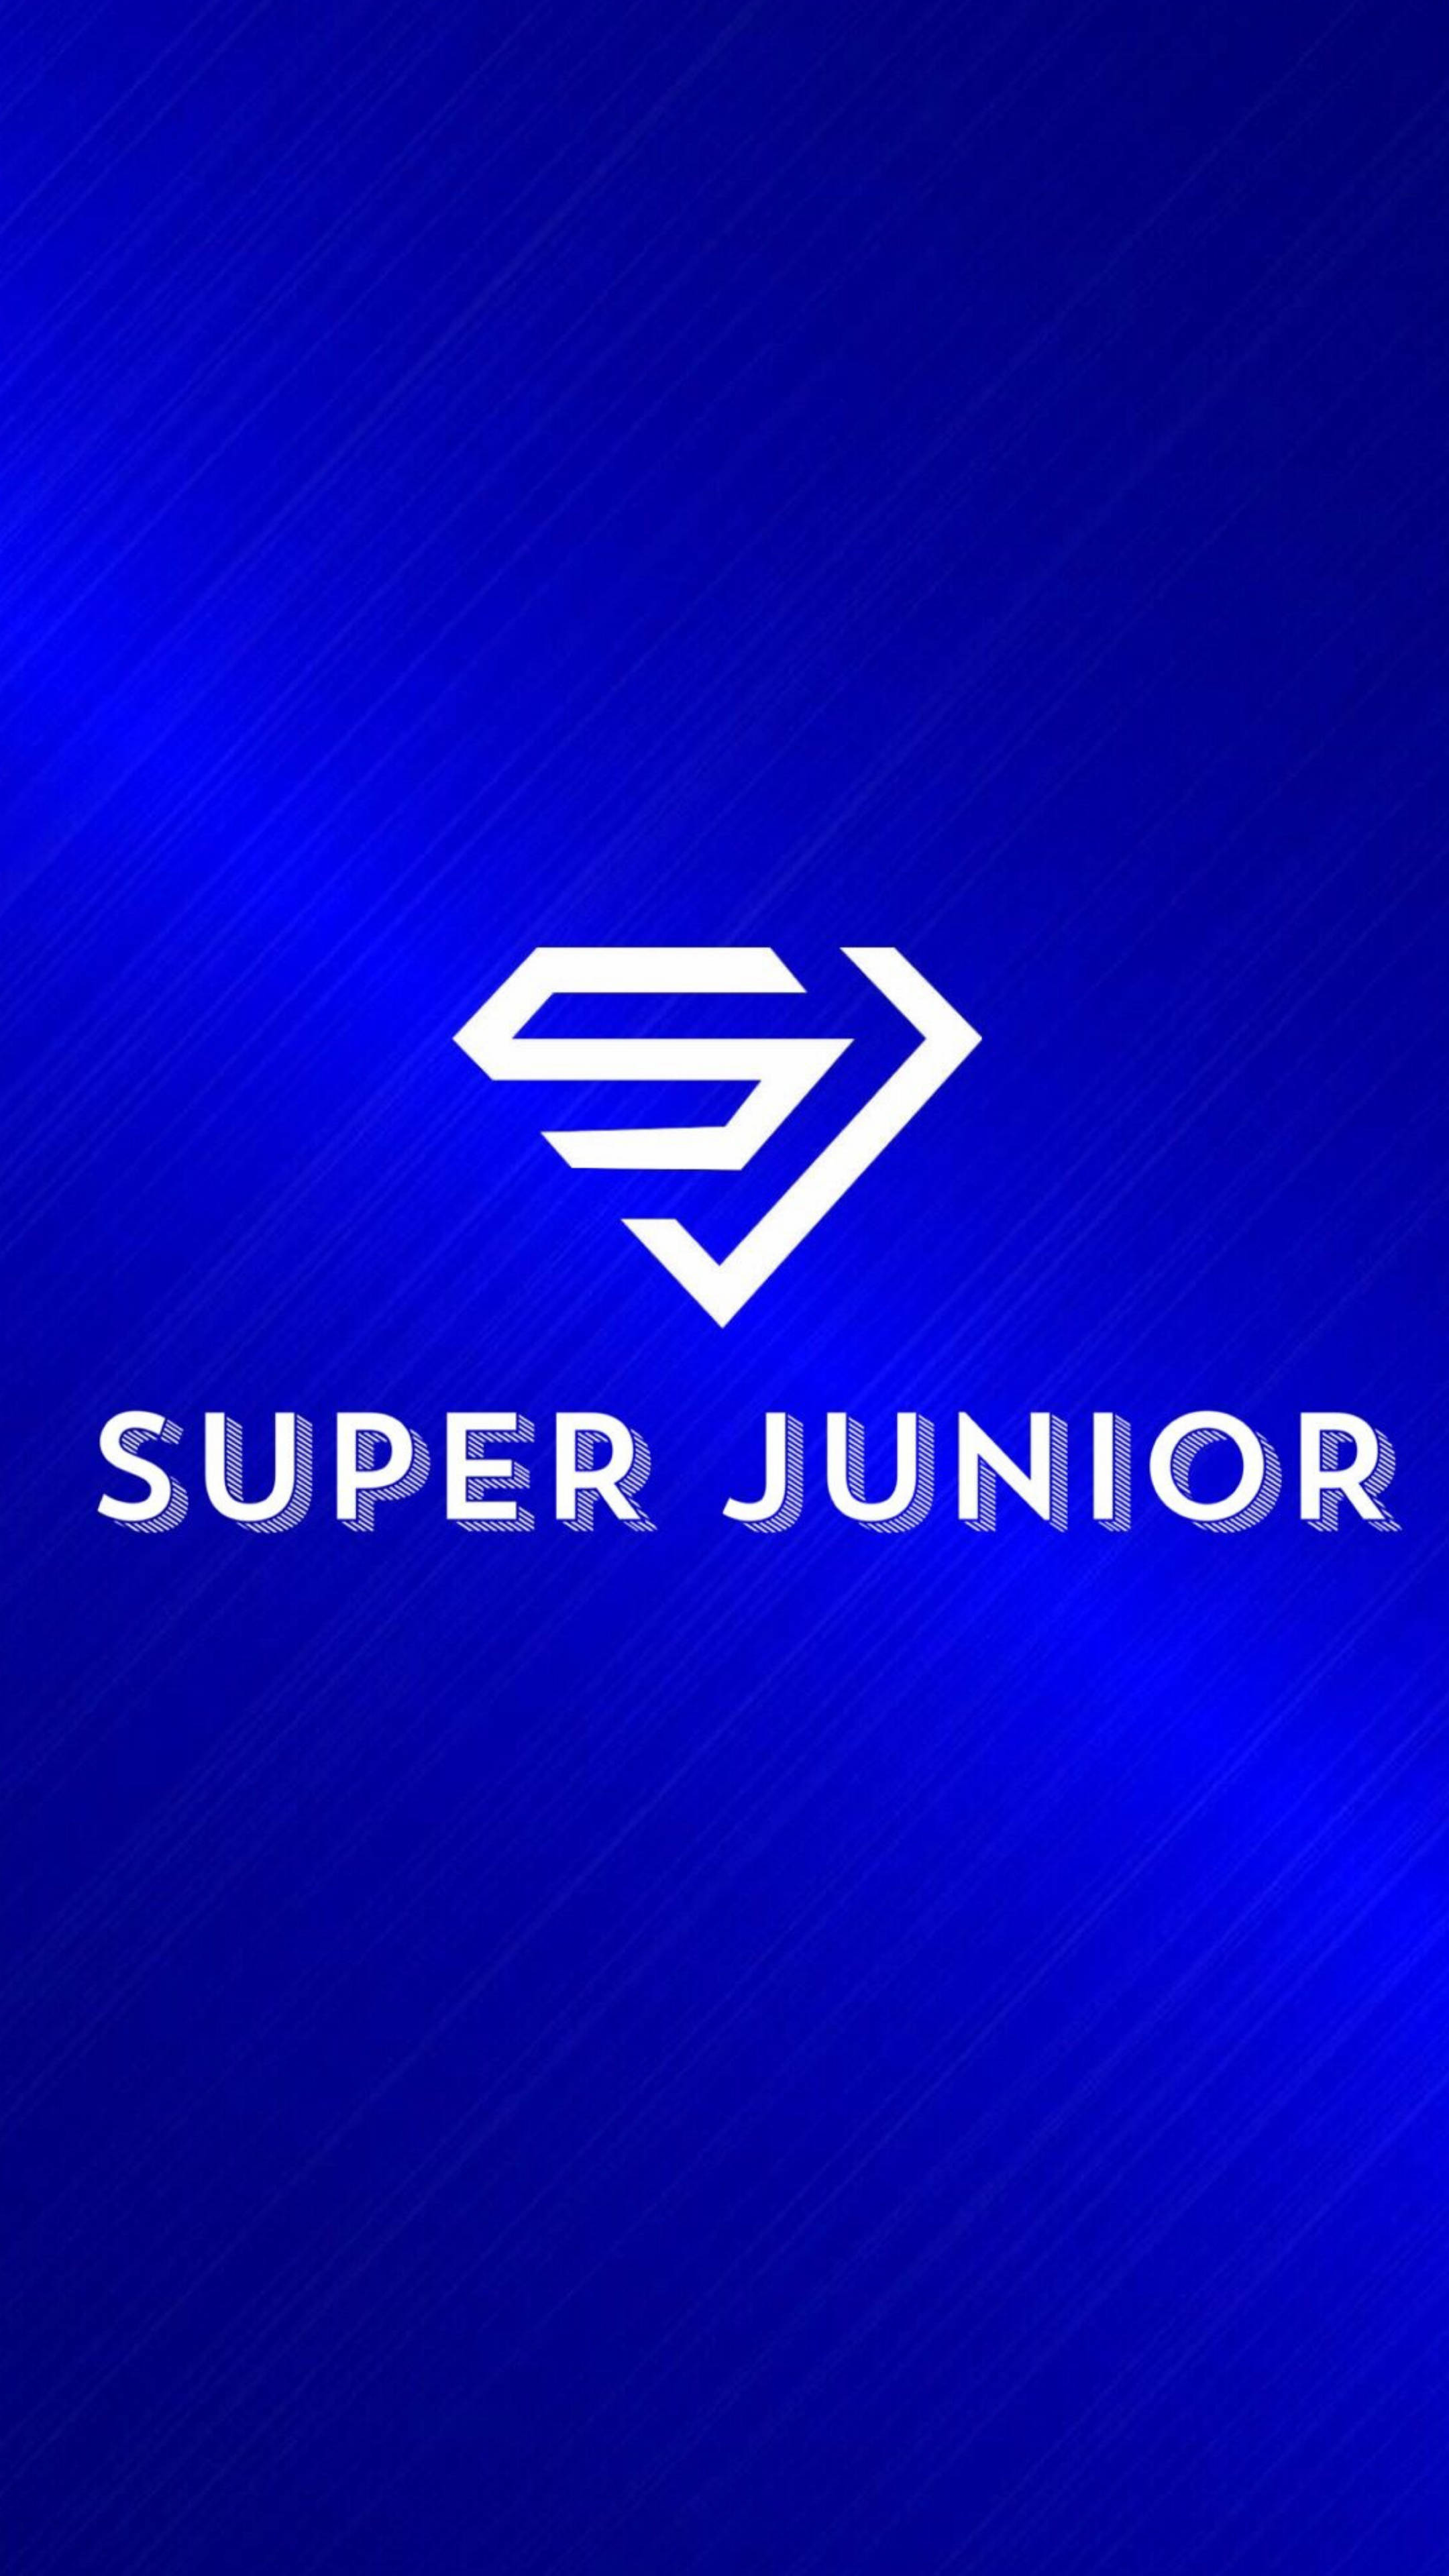 Download Super Junior Plain Logo Wallpaper 